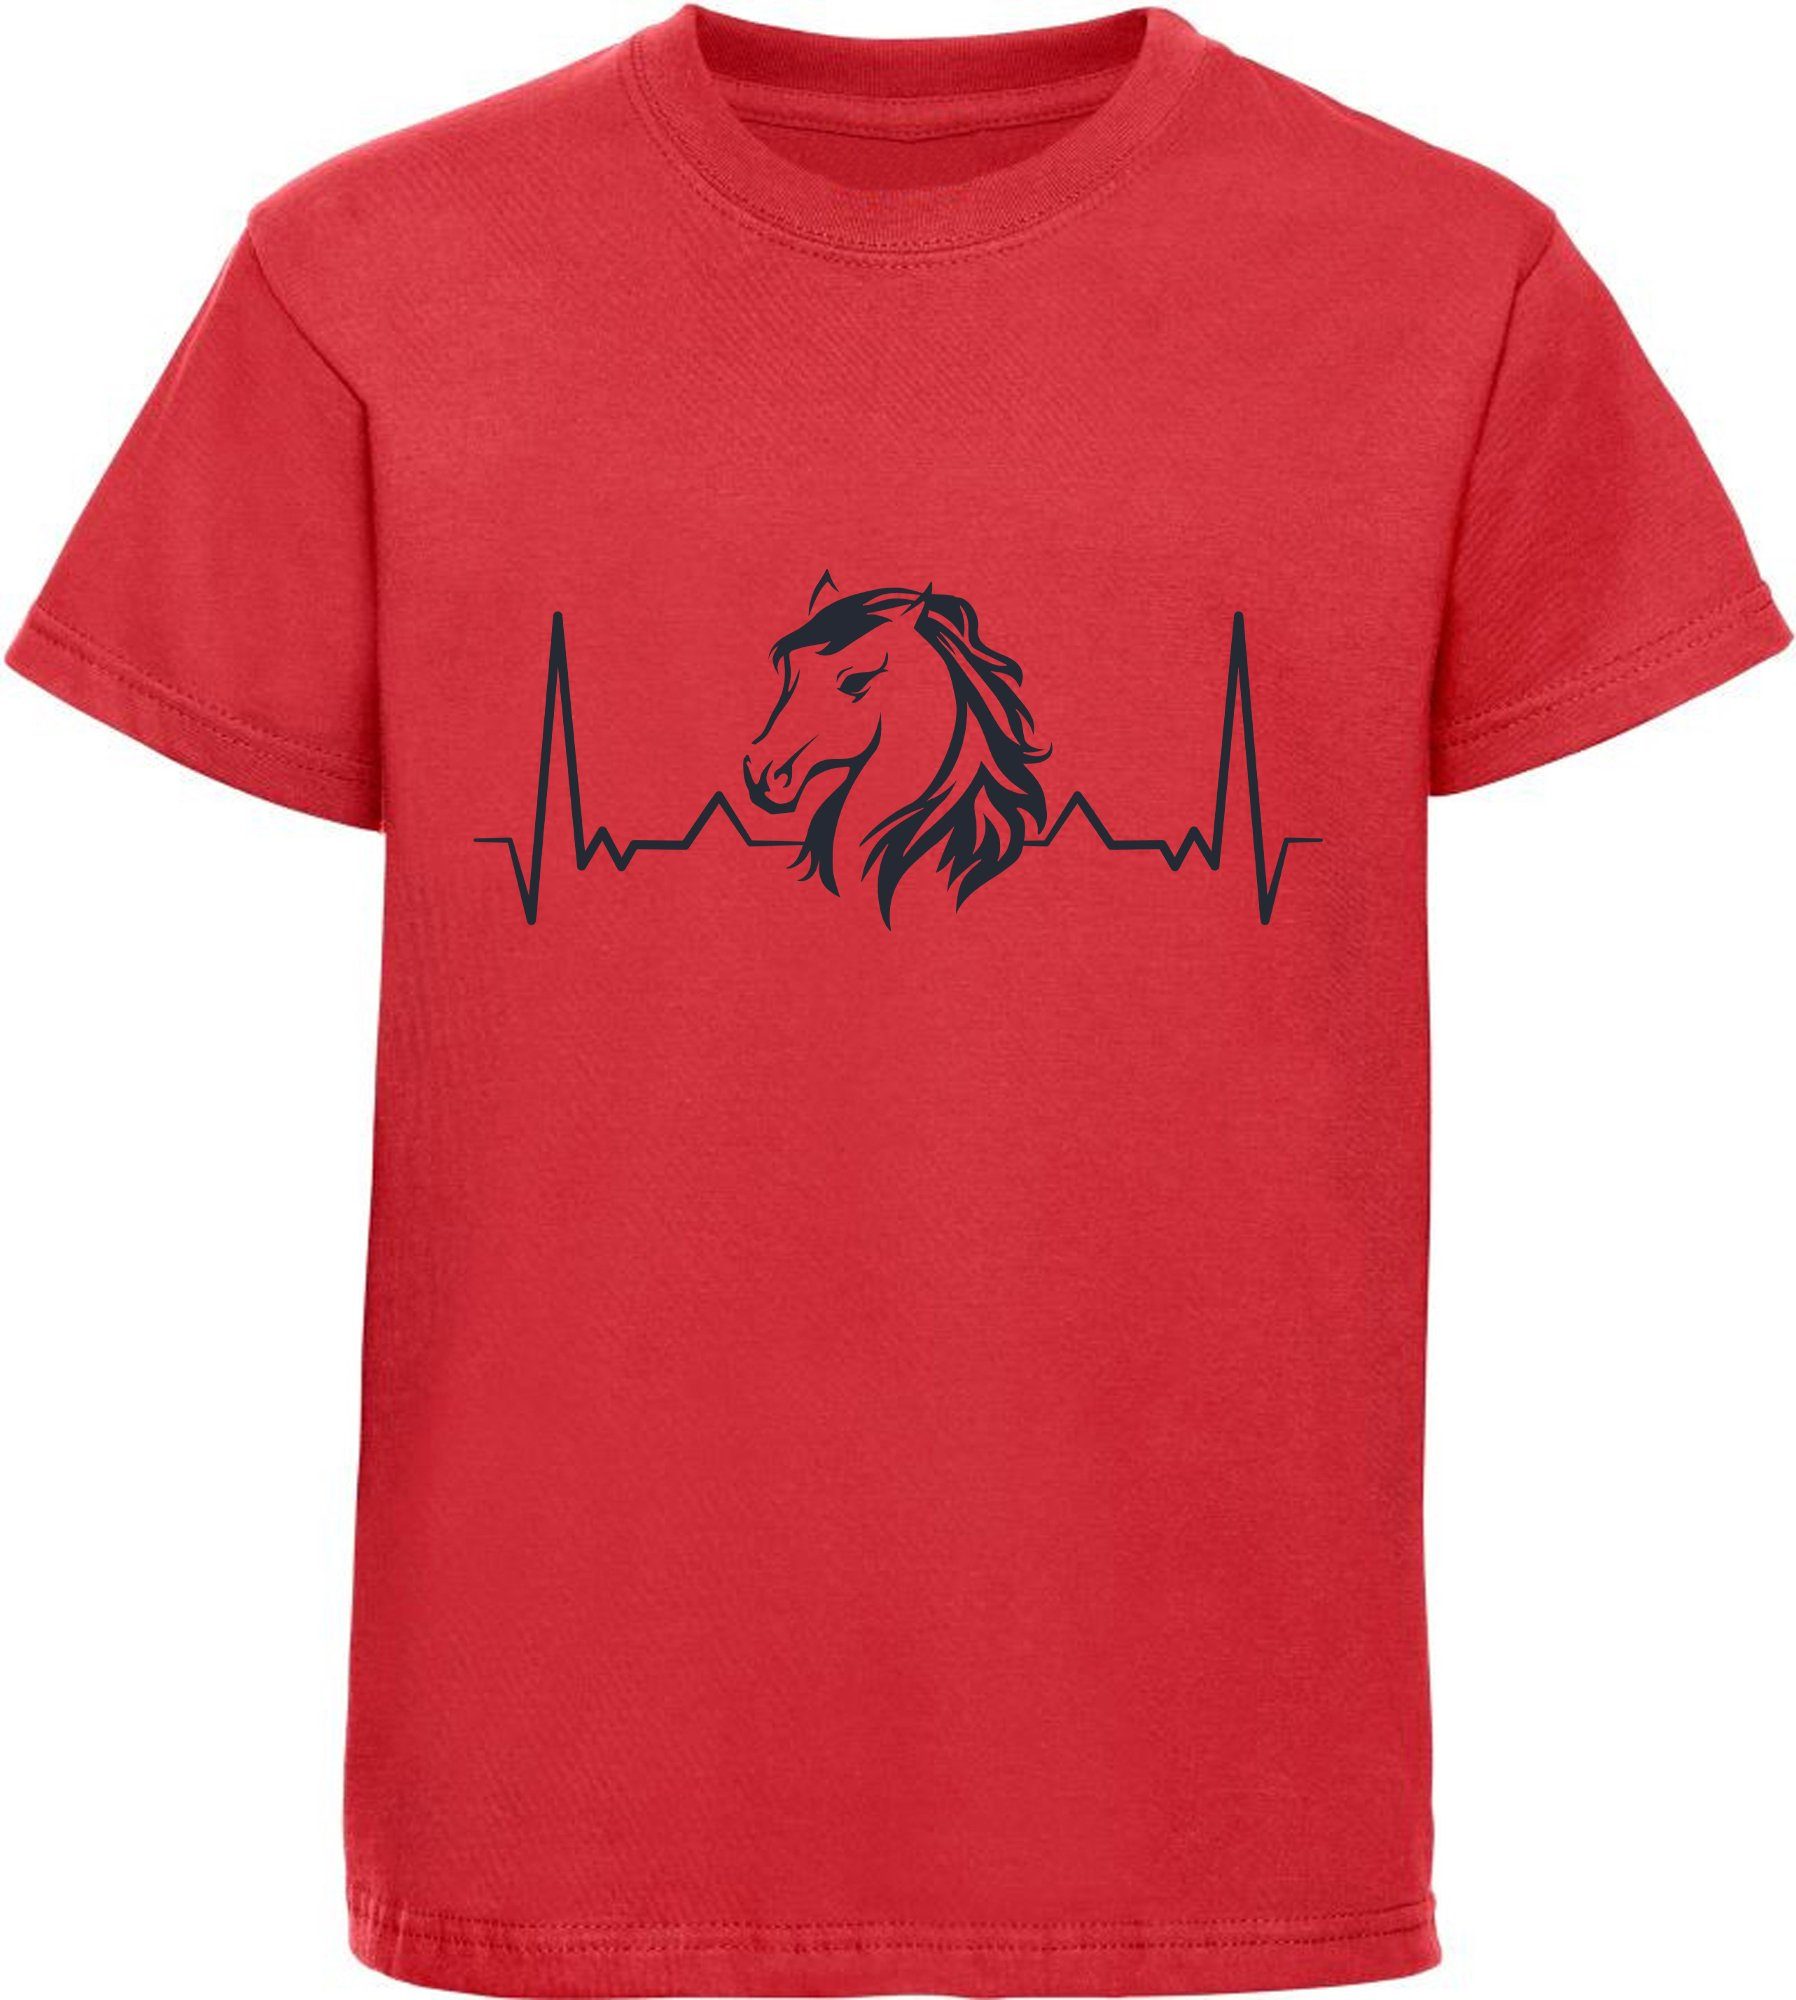 MyDesign24 Print-Shirt bedrucktes Mädchen T-Shirt Herzschlaglinie mit Pferdekopf Baumwollshirt mit Aufdruck, i143 rot